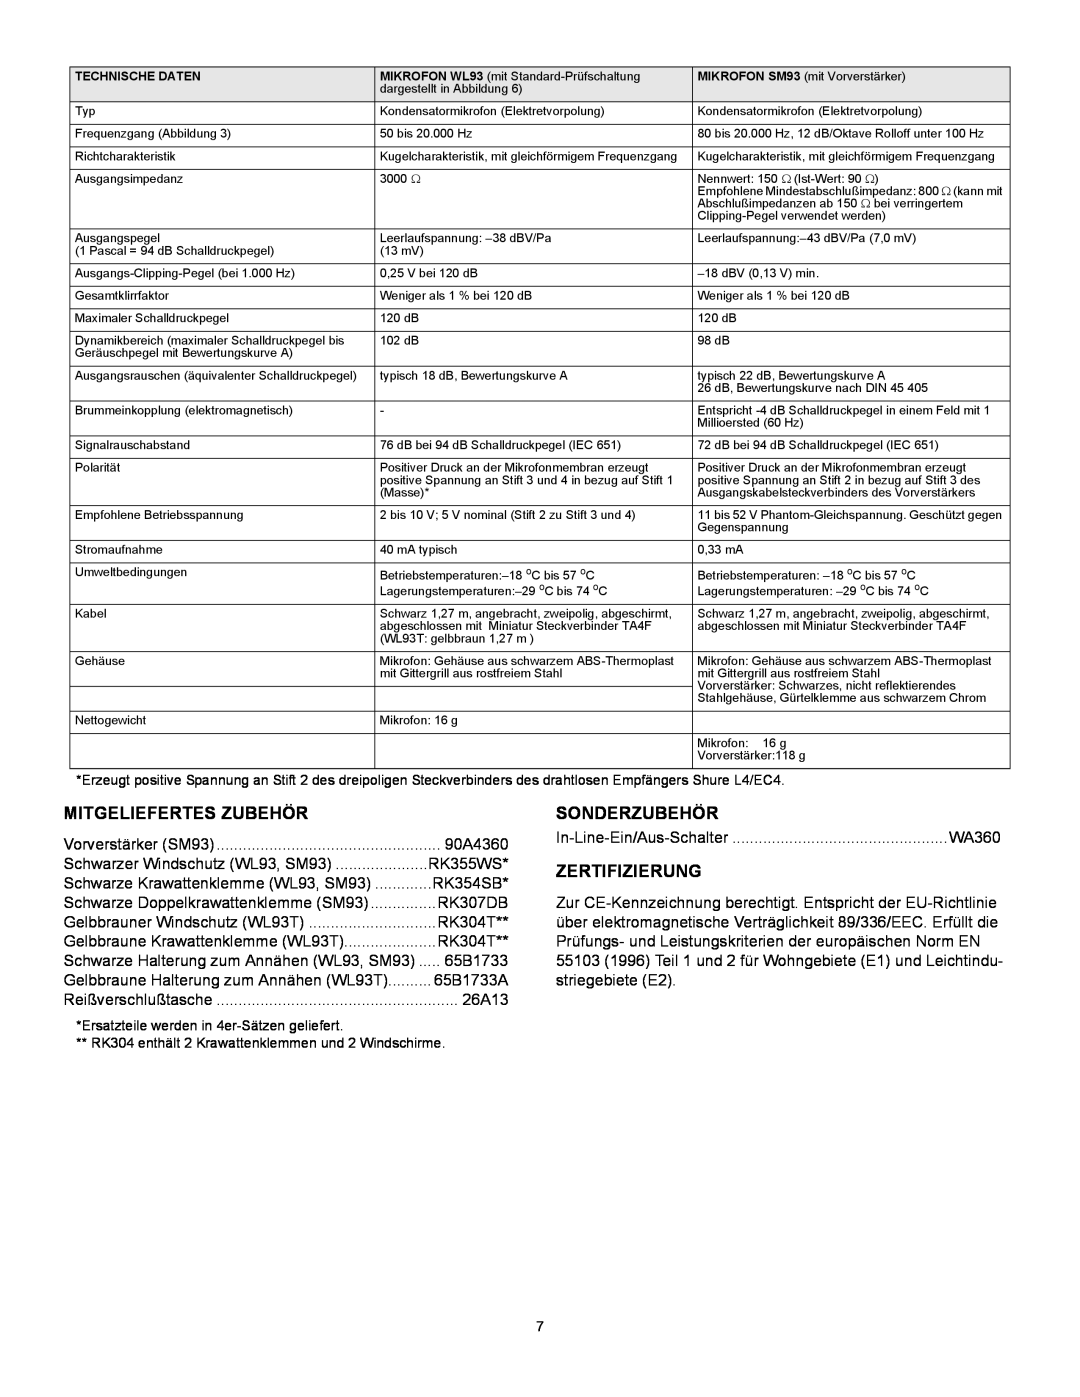 Shure WL93 manual Mitgeliefertes Zubehör, Sonderzubehör, Zertifizierung 